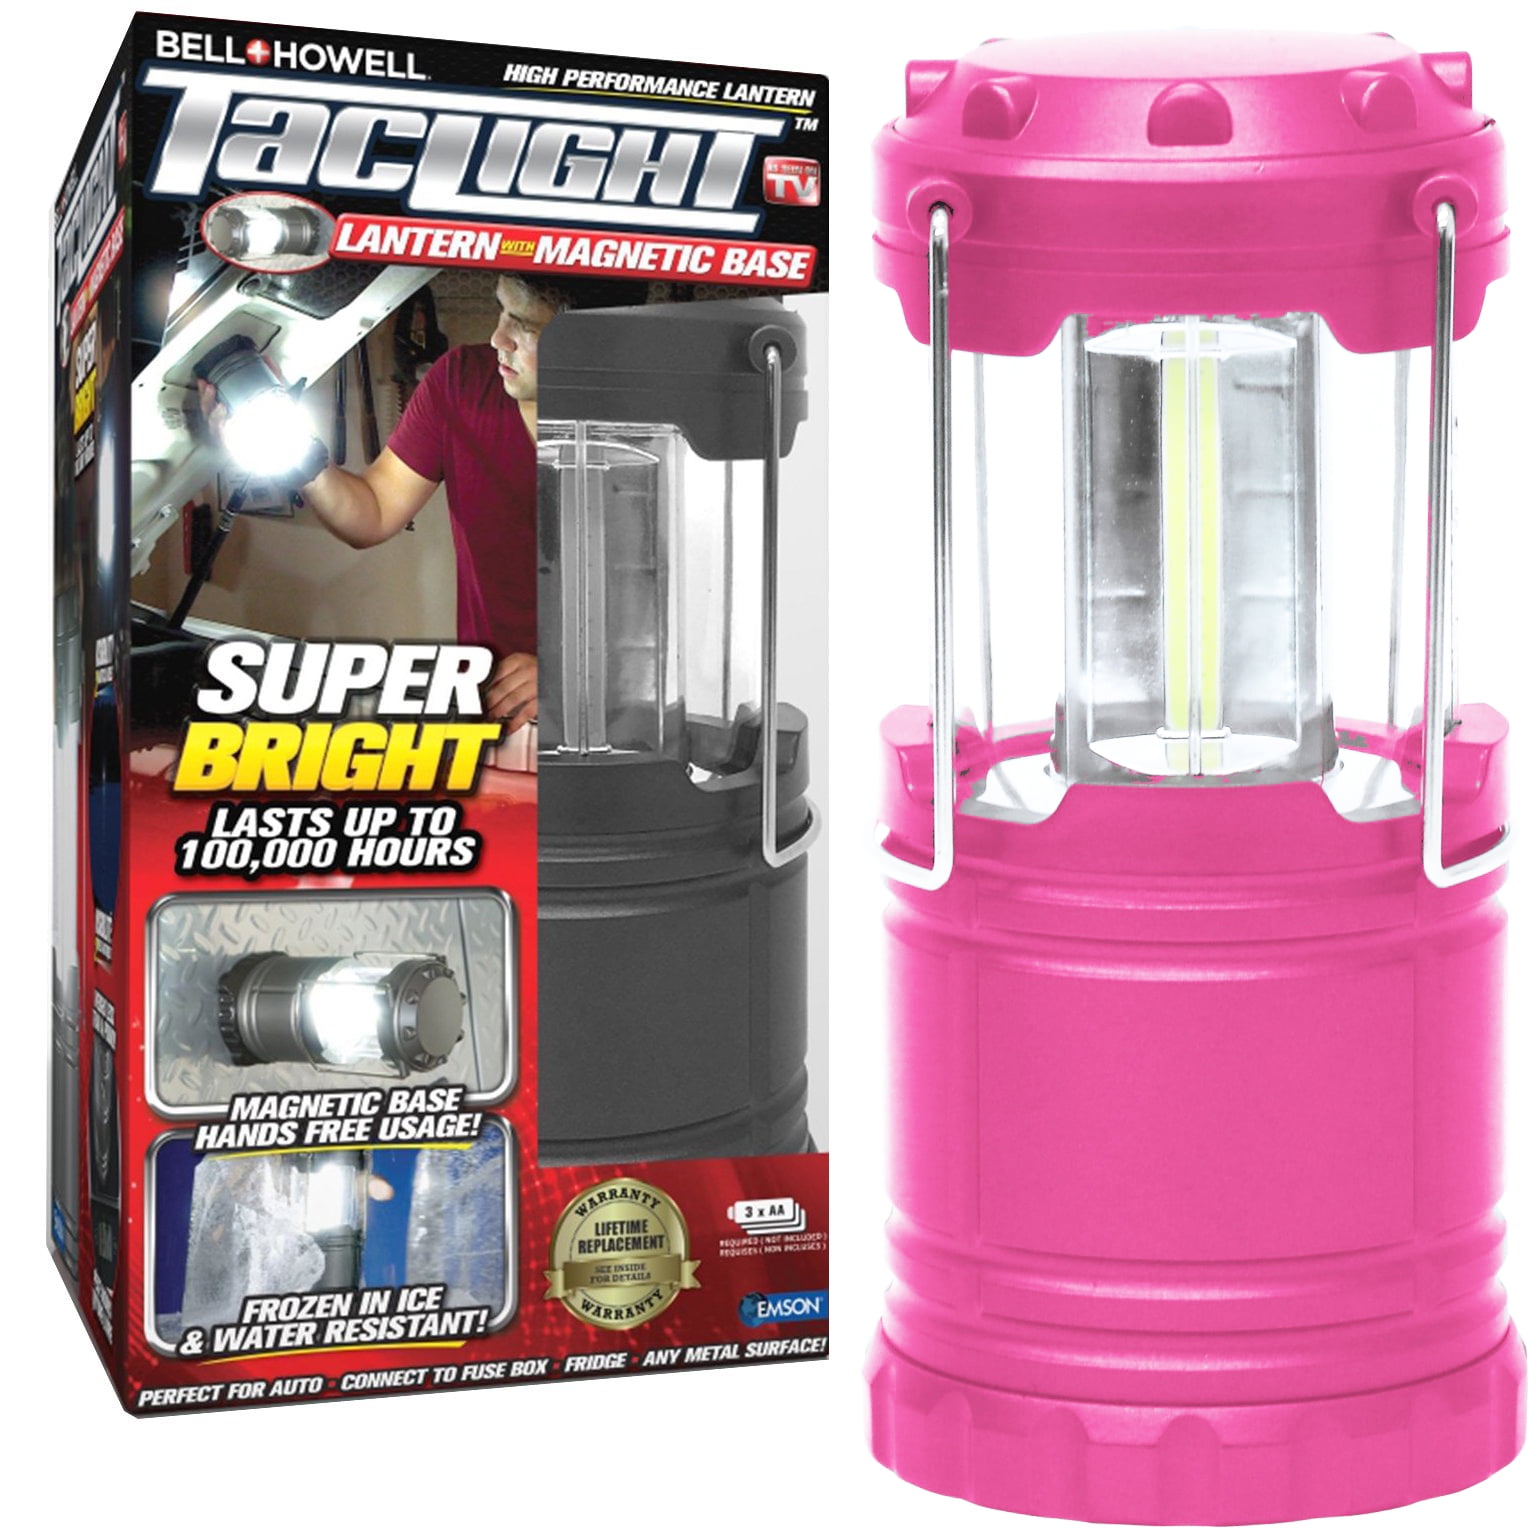 Bell + Howell 4-pack Warm Light Portable Lantern - 22642642